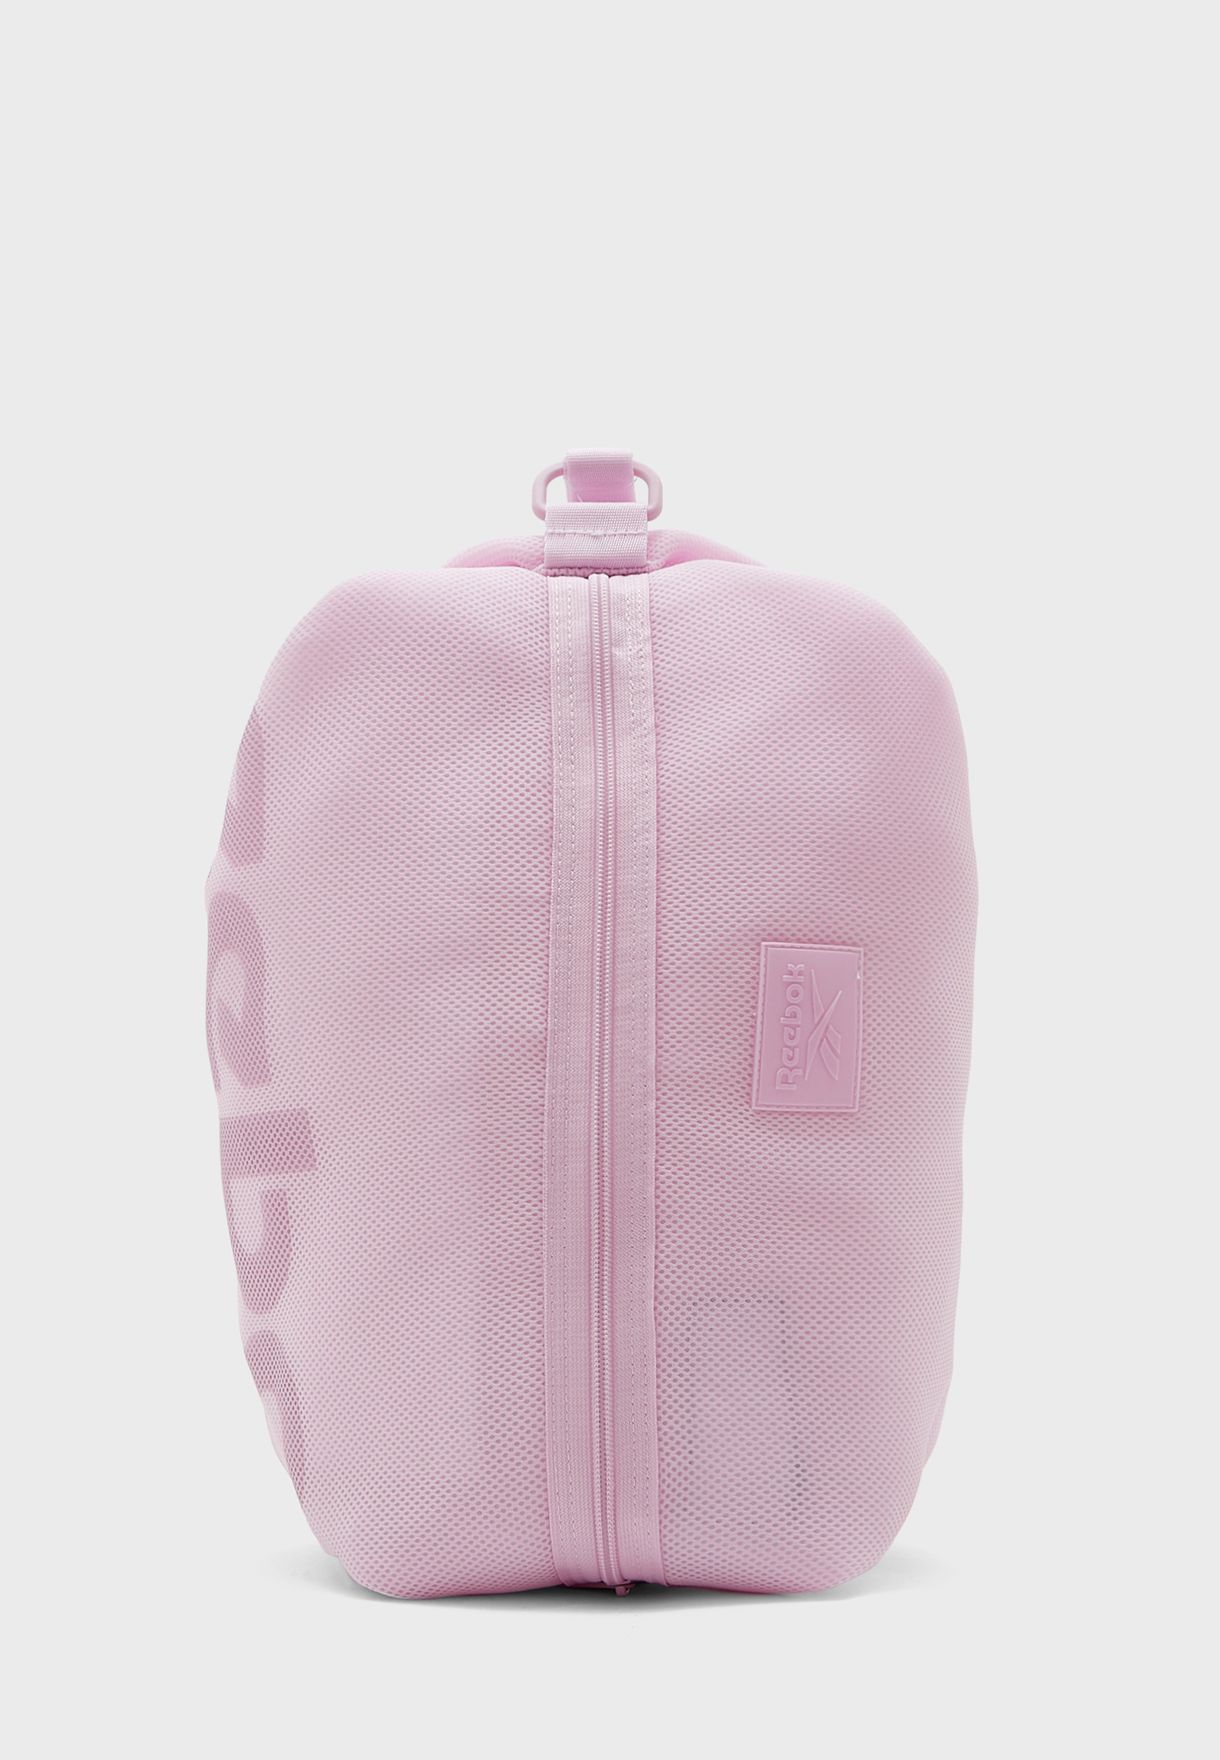 reebok pink backpack